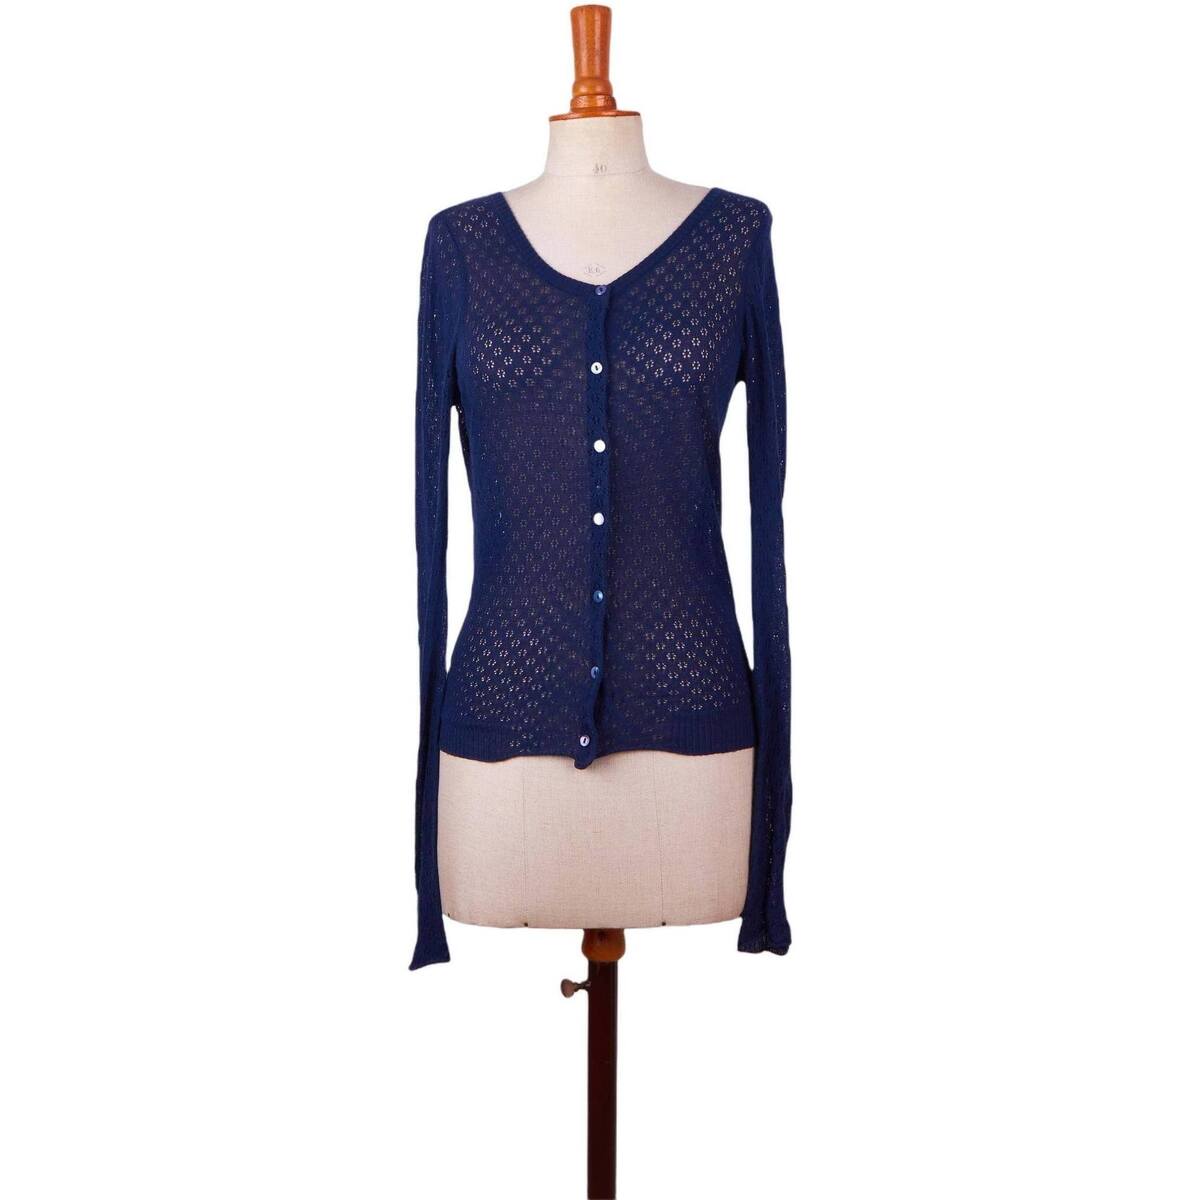 Vêtements Femme Sweats Livraison gratuite et retour offert Pull-over en coton Bleu